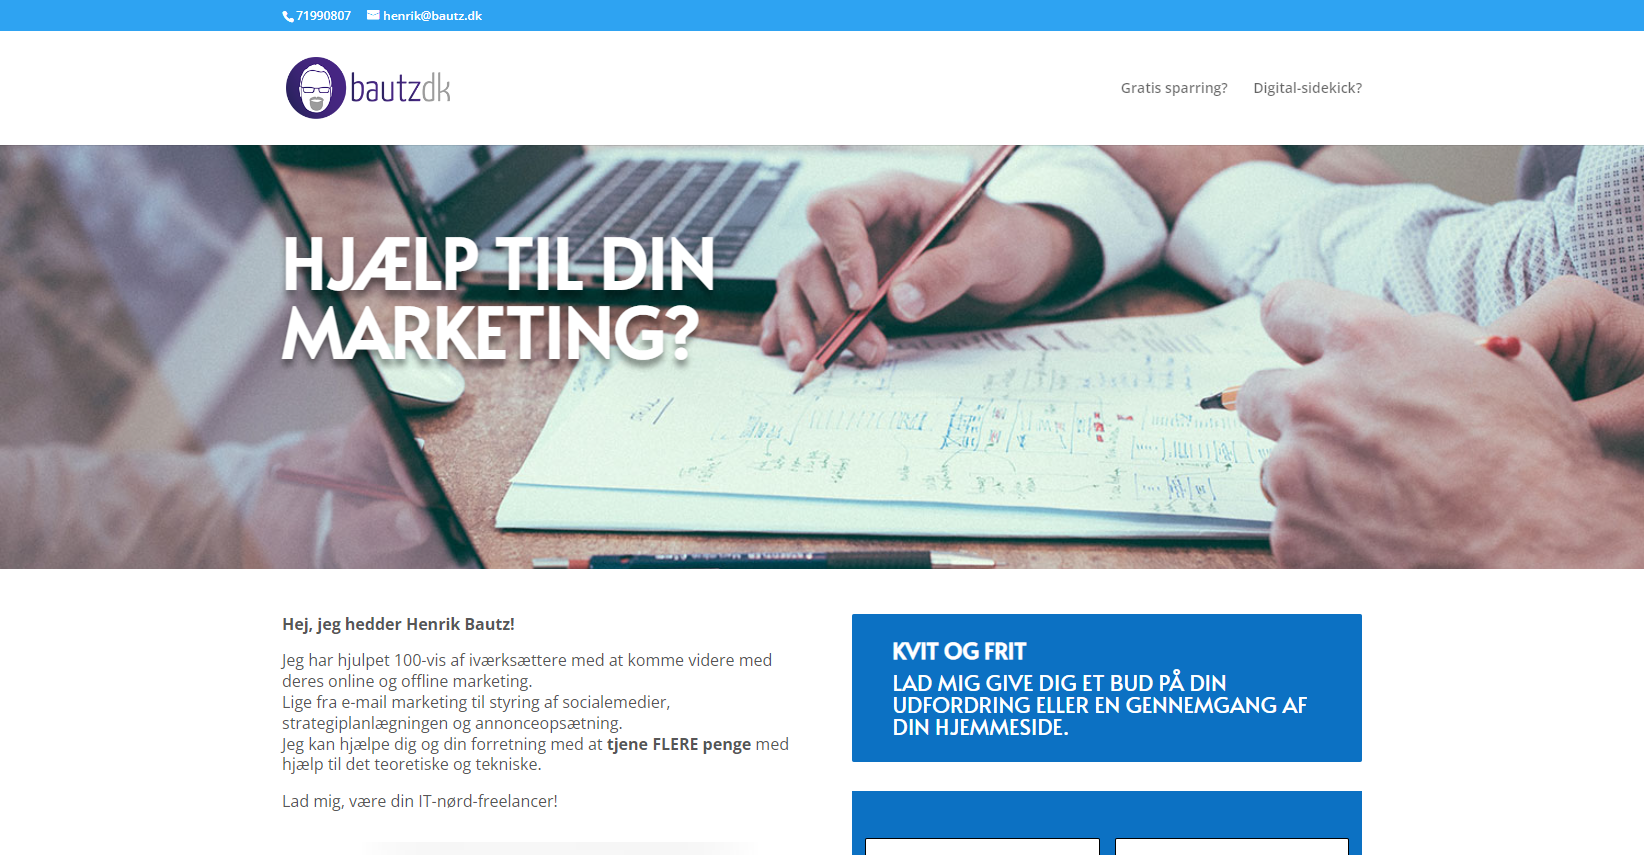 Bautz.dk giver dig support til din online marketing!